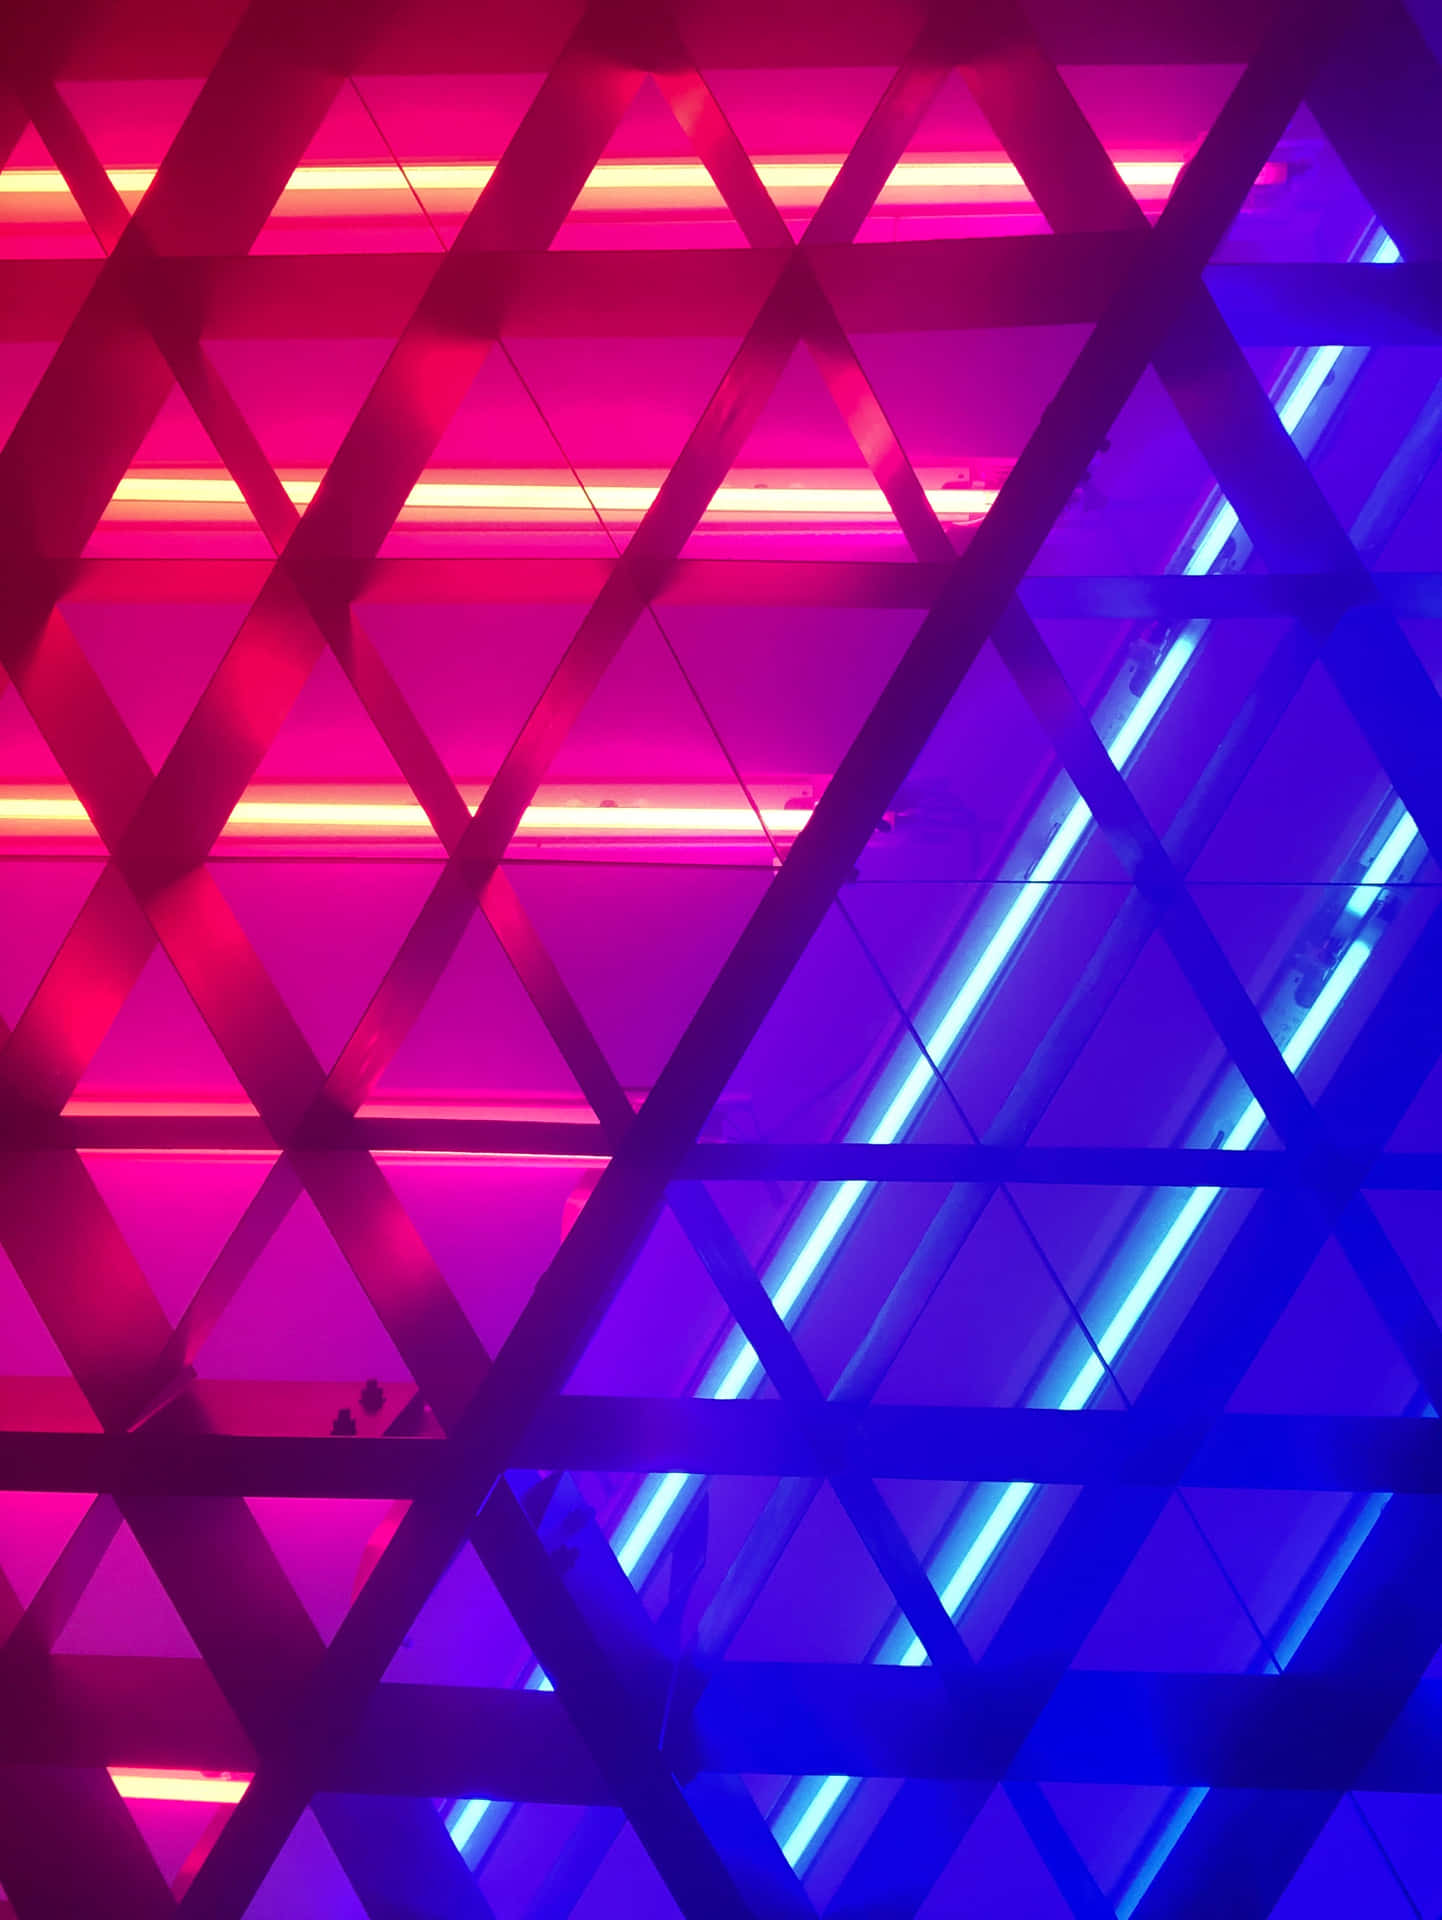 A Neon Light Wall